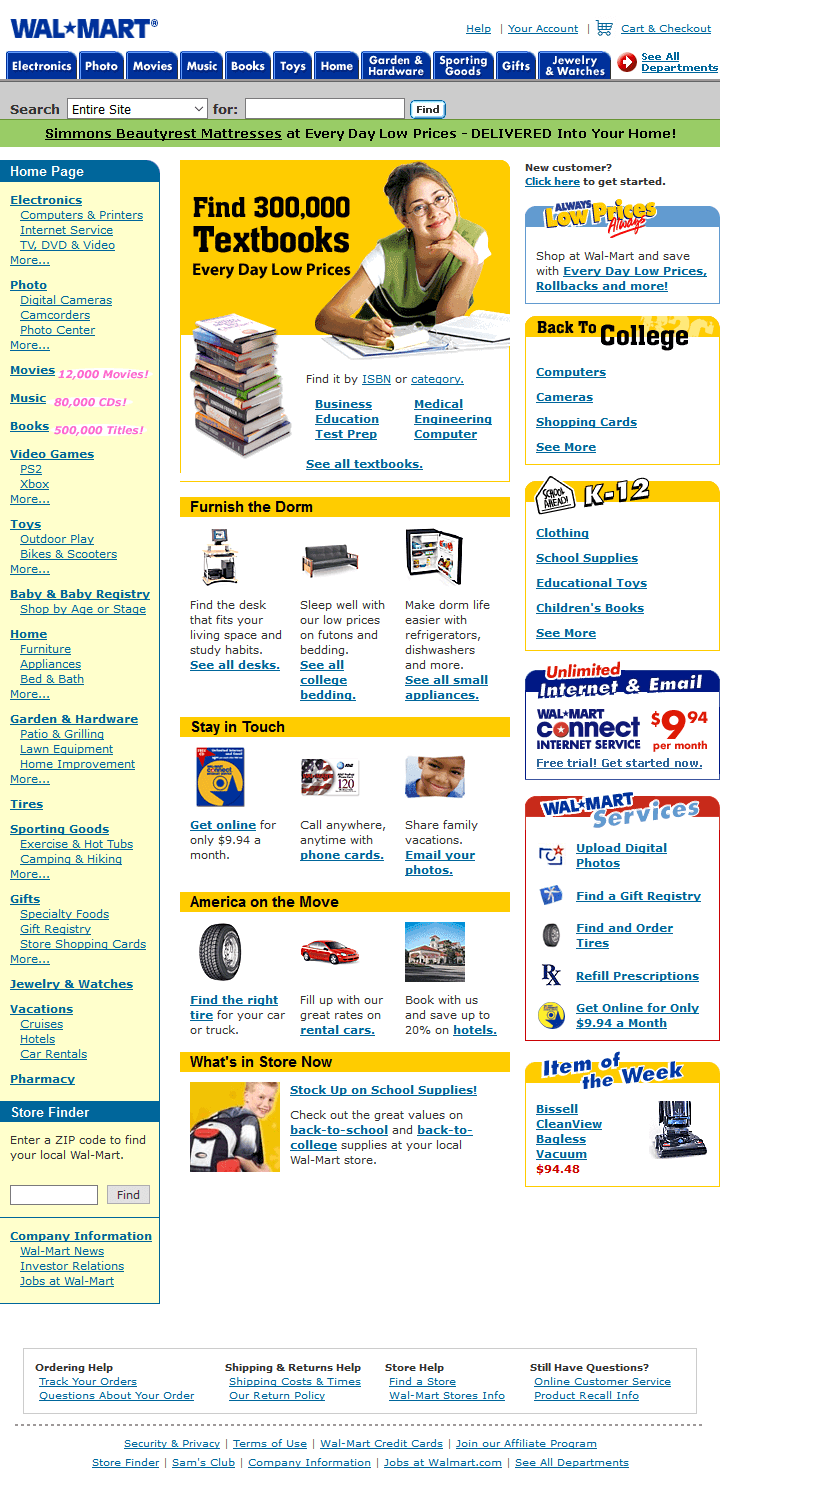 Walmart website in 2002